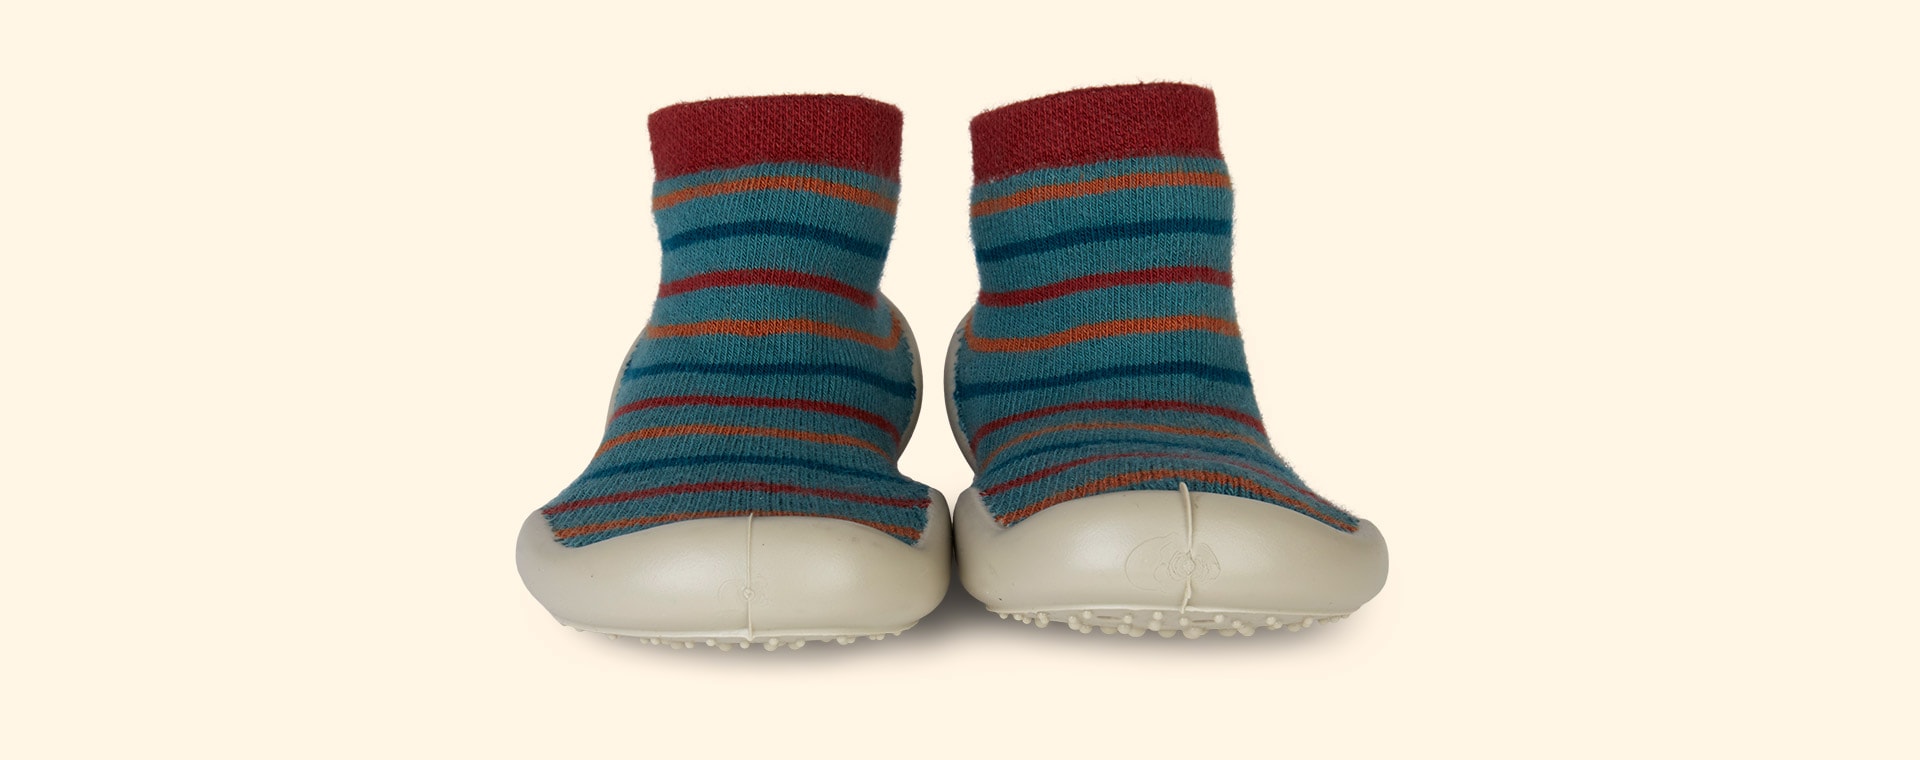 Buy the Collegien Charles Slipper Socks at KIDLY Ireland